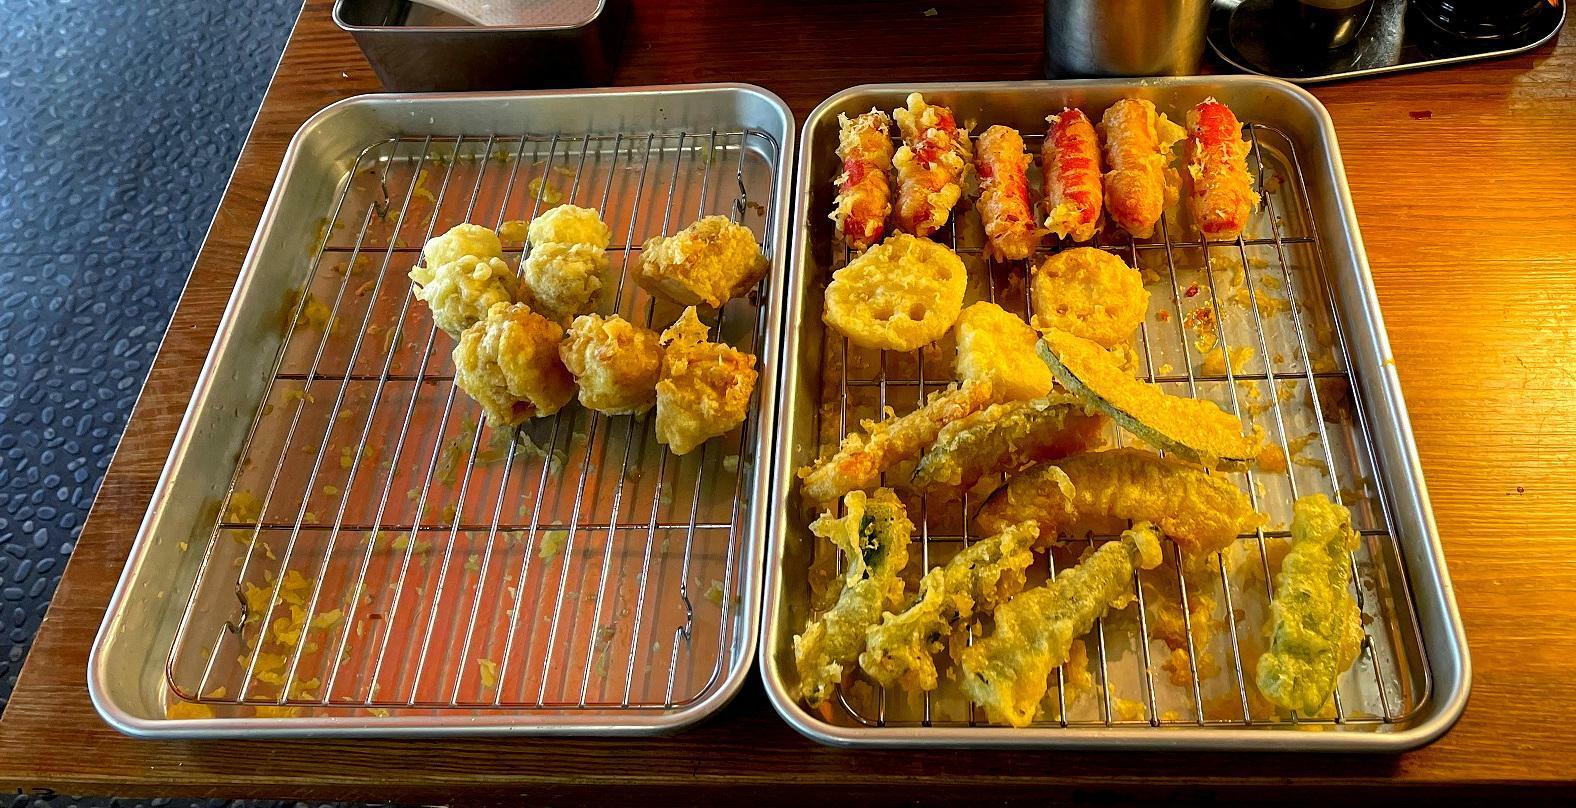 バイキングテーブルの天ぷらはすぐになくなるので、次から次へと新しい天ぷらが揚ってきます。